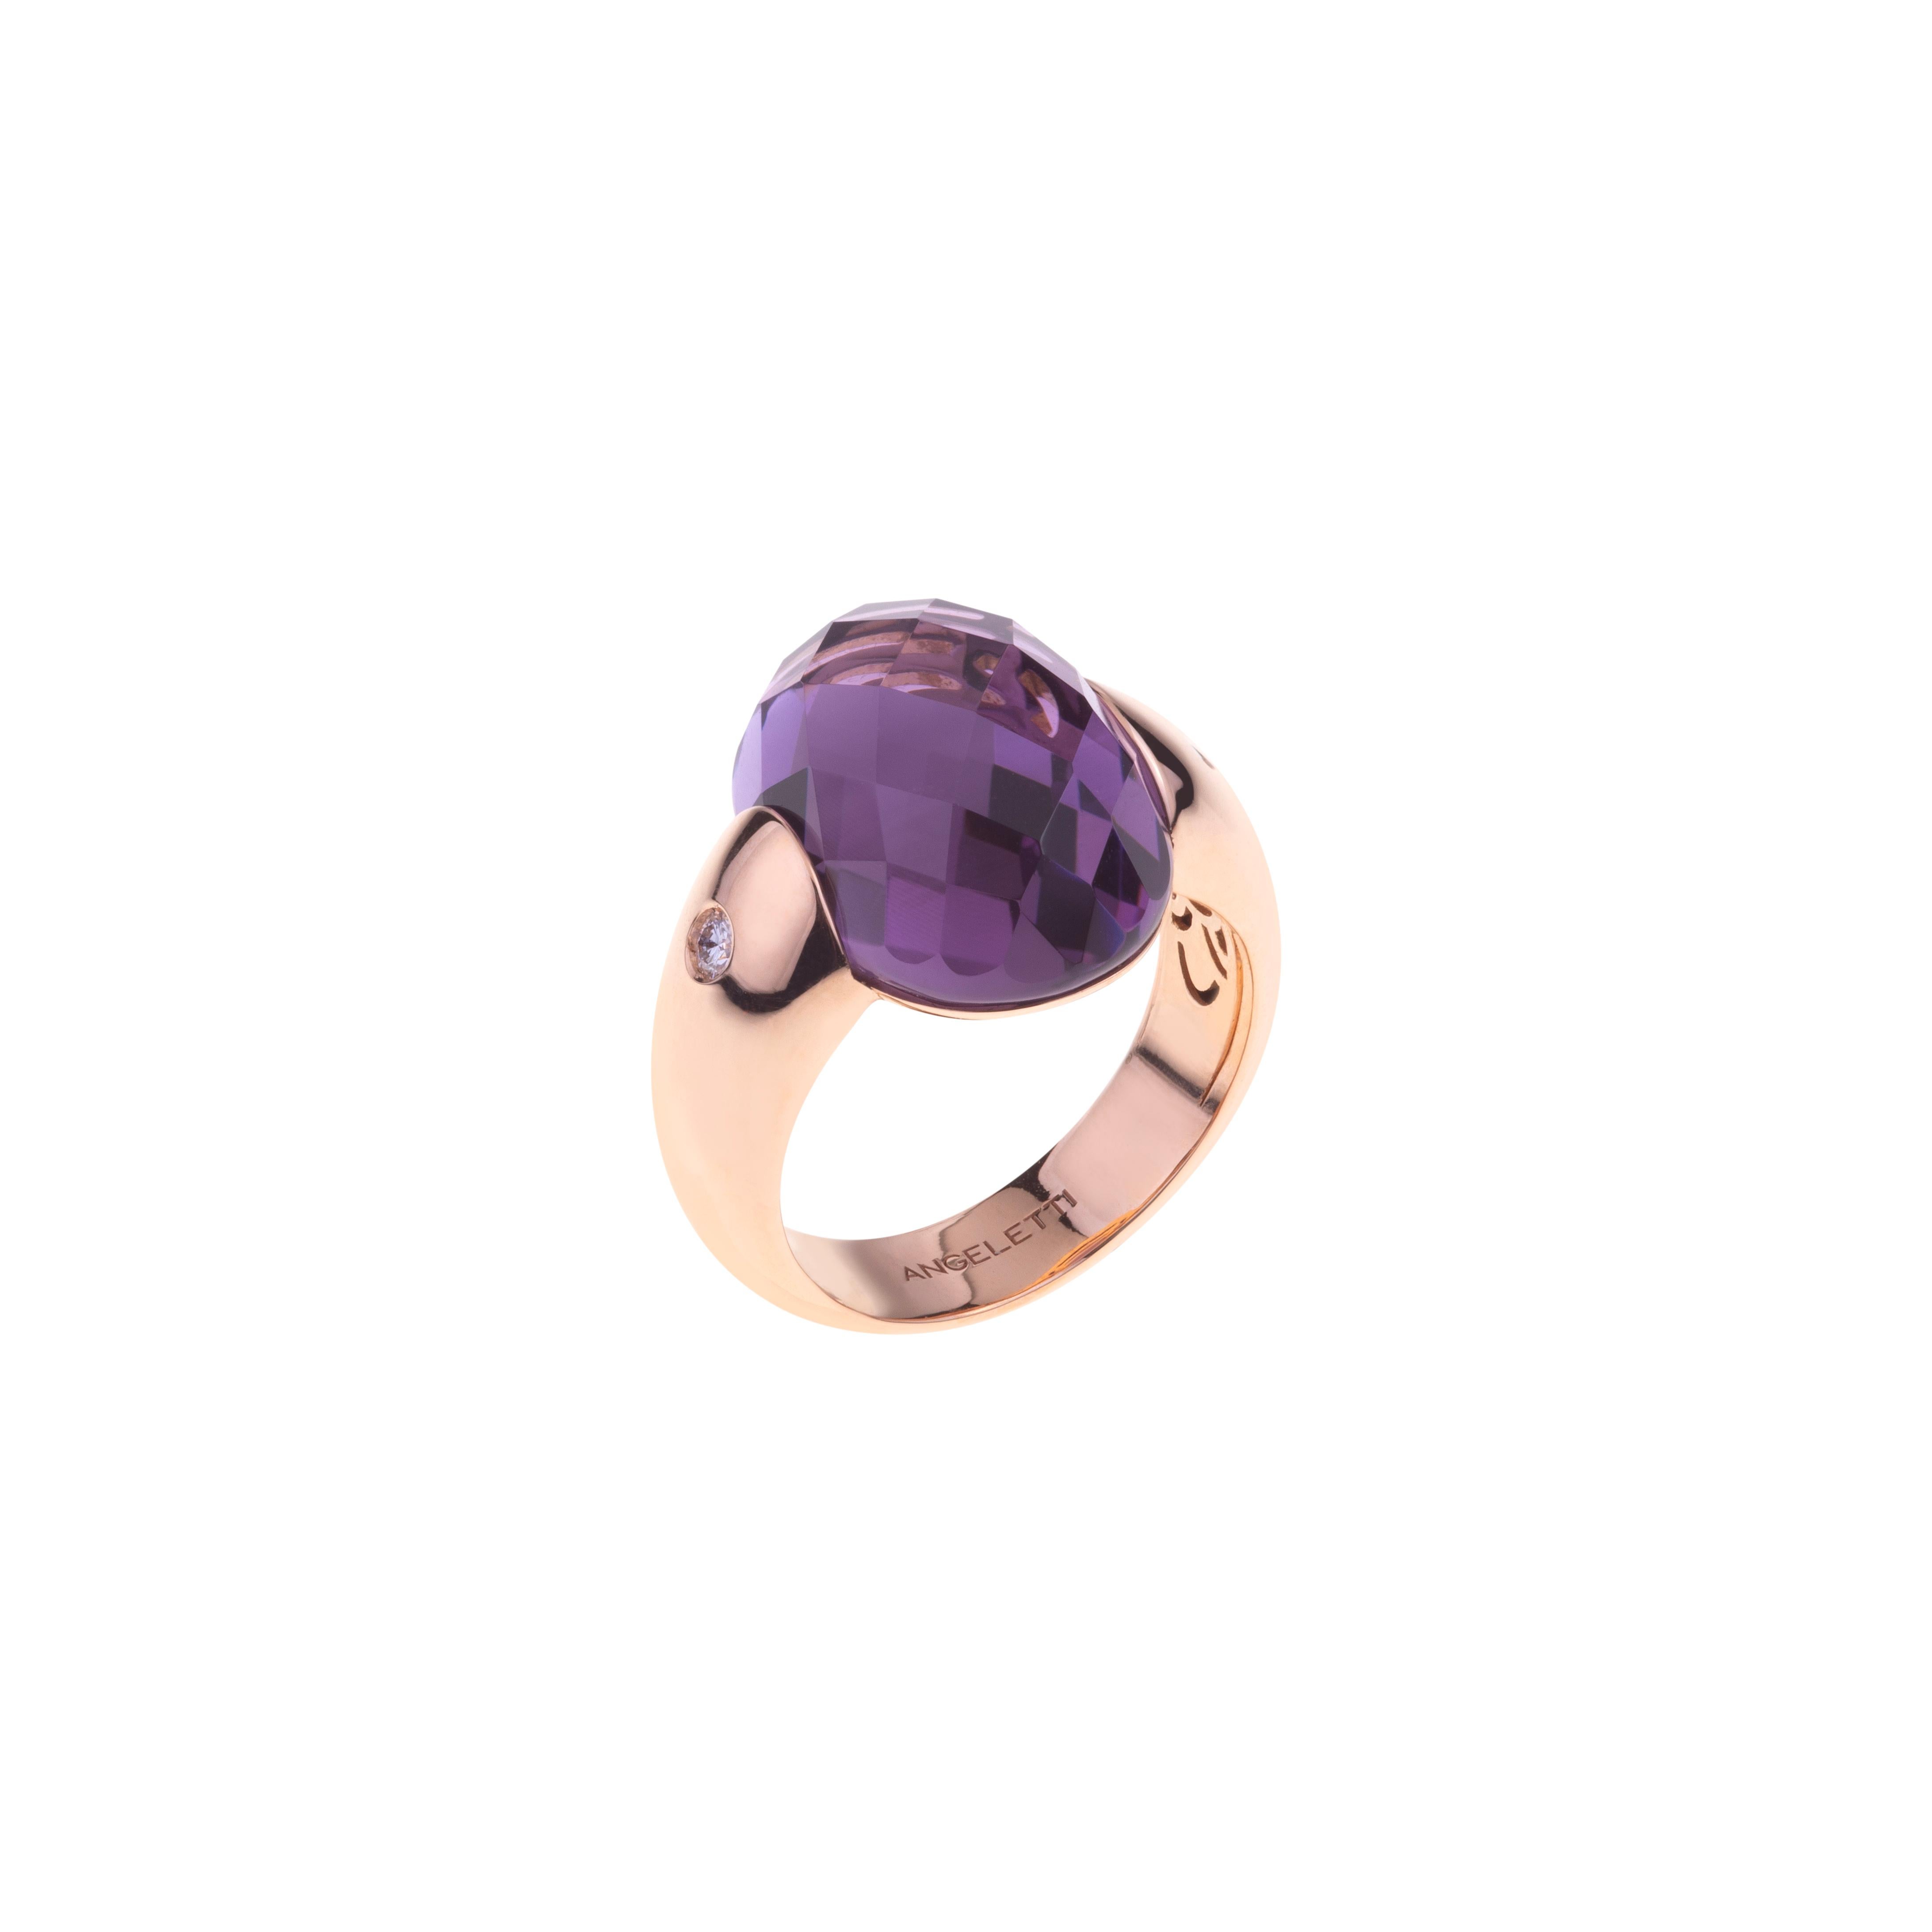 Embrace Collection'S von Angeletti. Rose Gold Ring mit Amethyst und Diamanten.
Ikonisches Umarmungsmodell, entworfen und hergestellt in Rom.
An der Seite des Amethysten (14,51 ct.) zwei Diamanten  ct. 0.16. Das Goldgewicht liegt je nach Größe